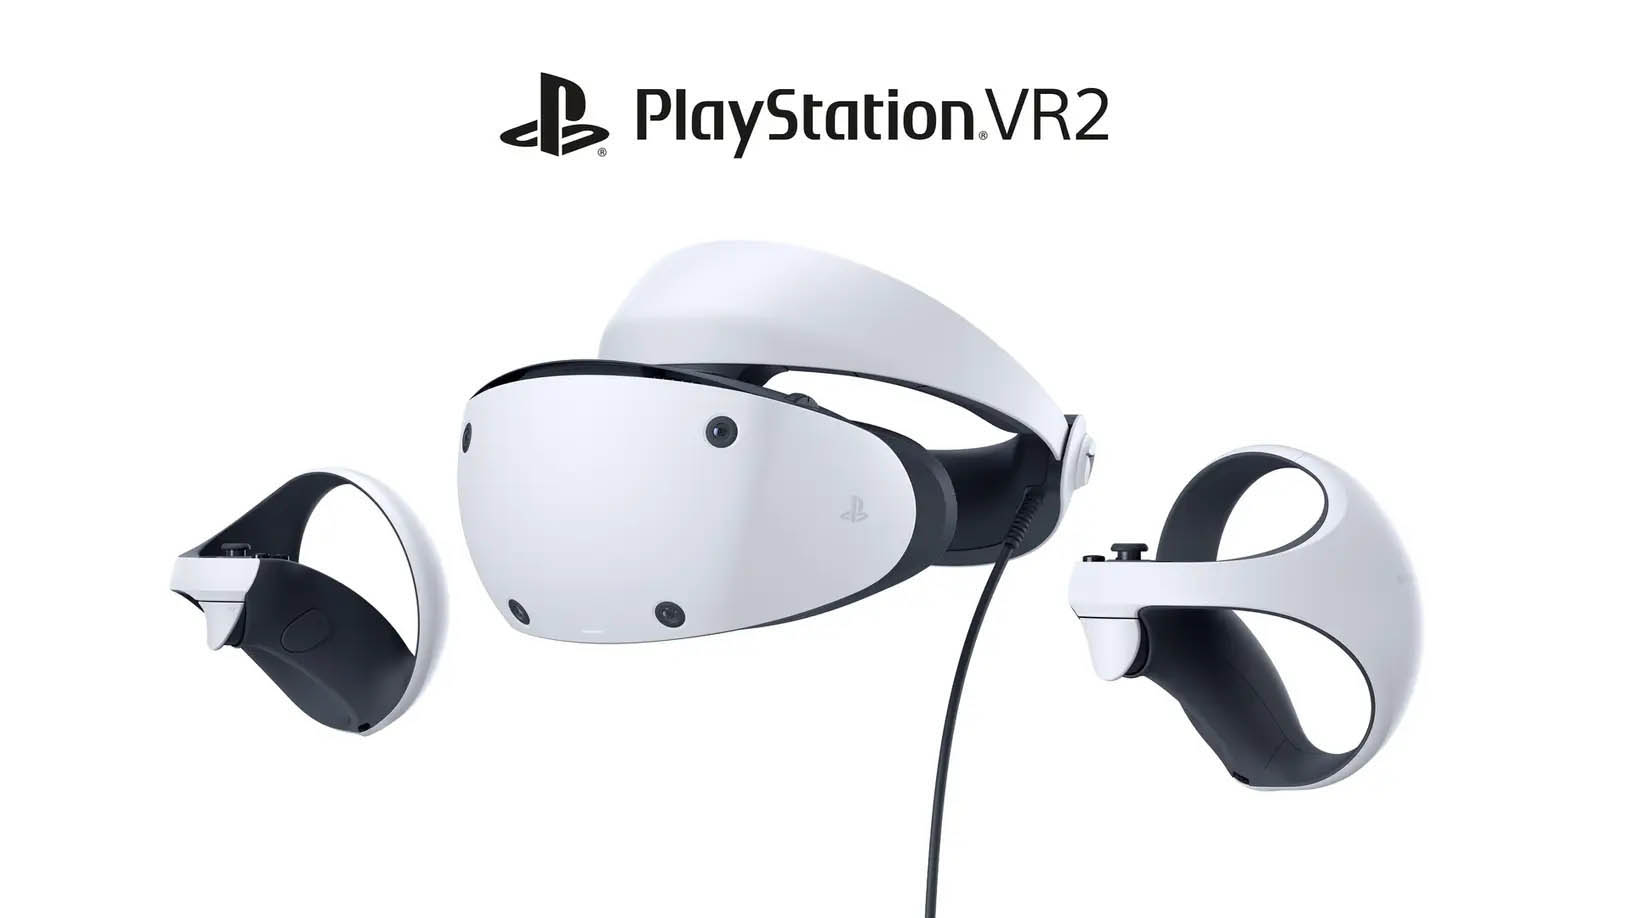 発売間近のPS VR2を特集。「PLAY! PLAY! PLAY!」最新回はHorizon